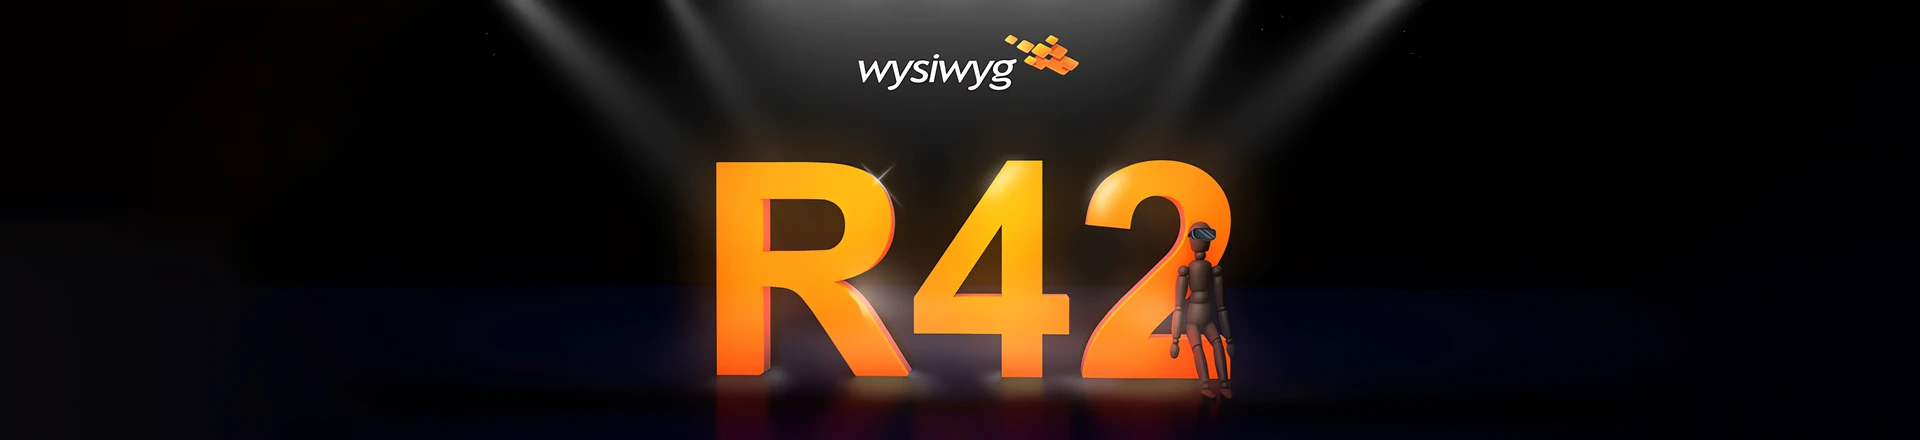 WYSIWYG R42 - Nowy wymiar projektowania